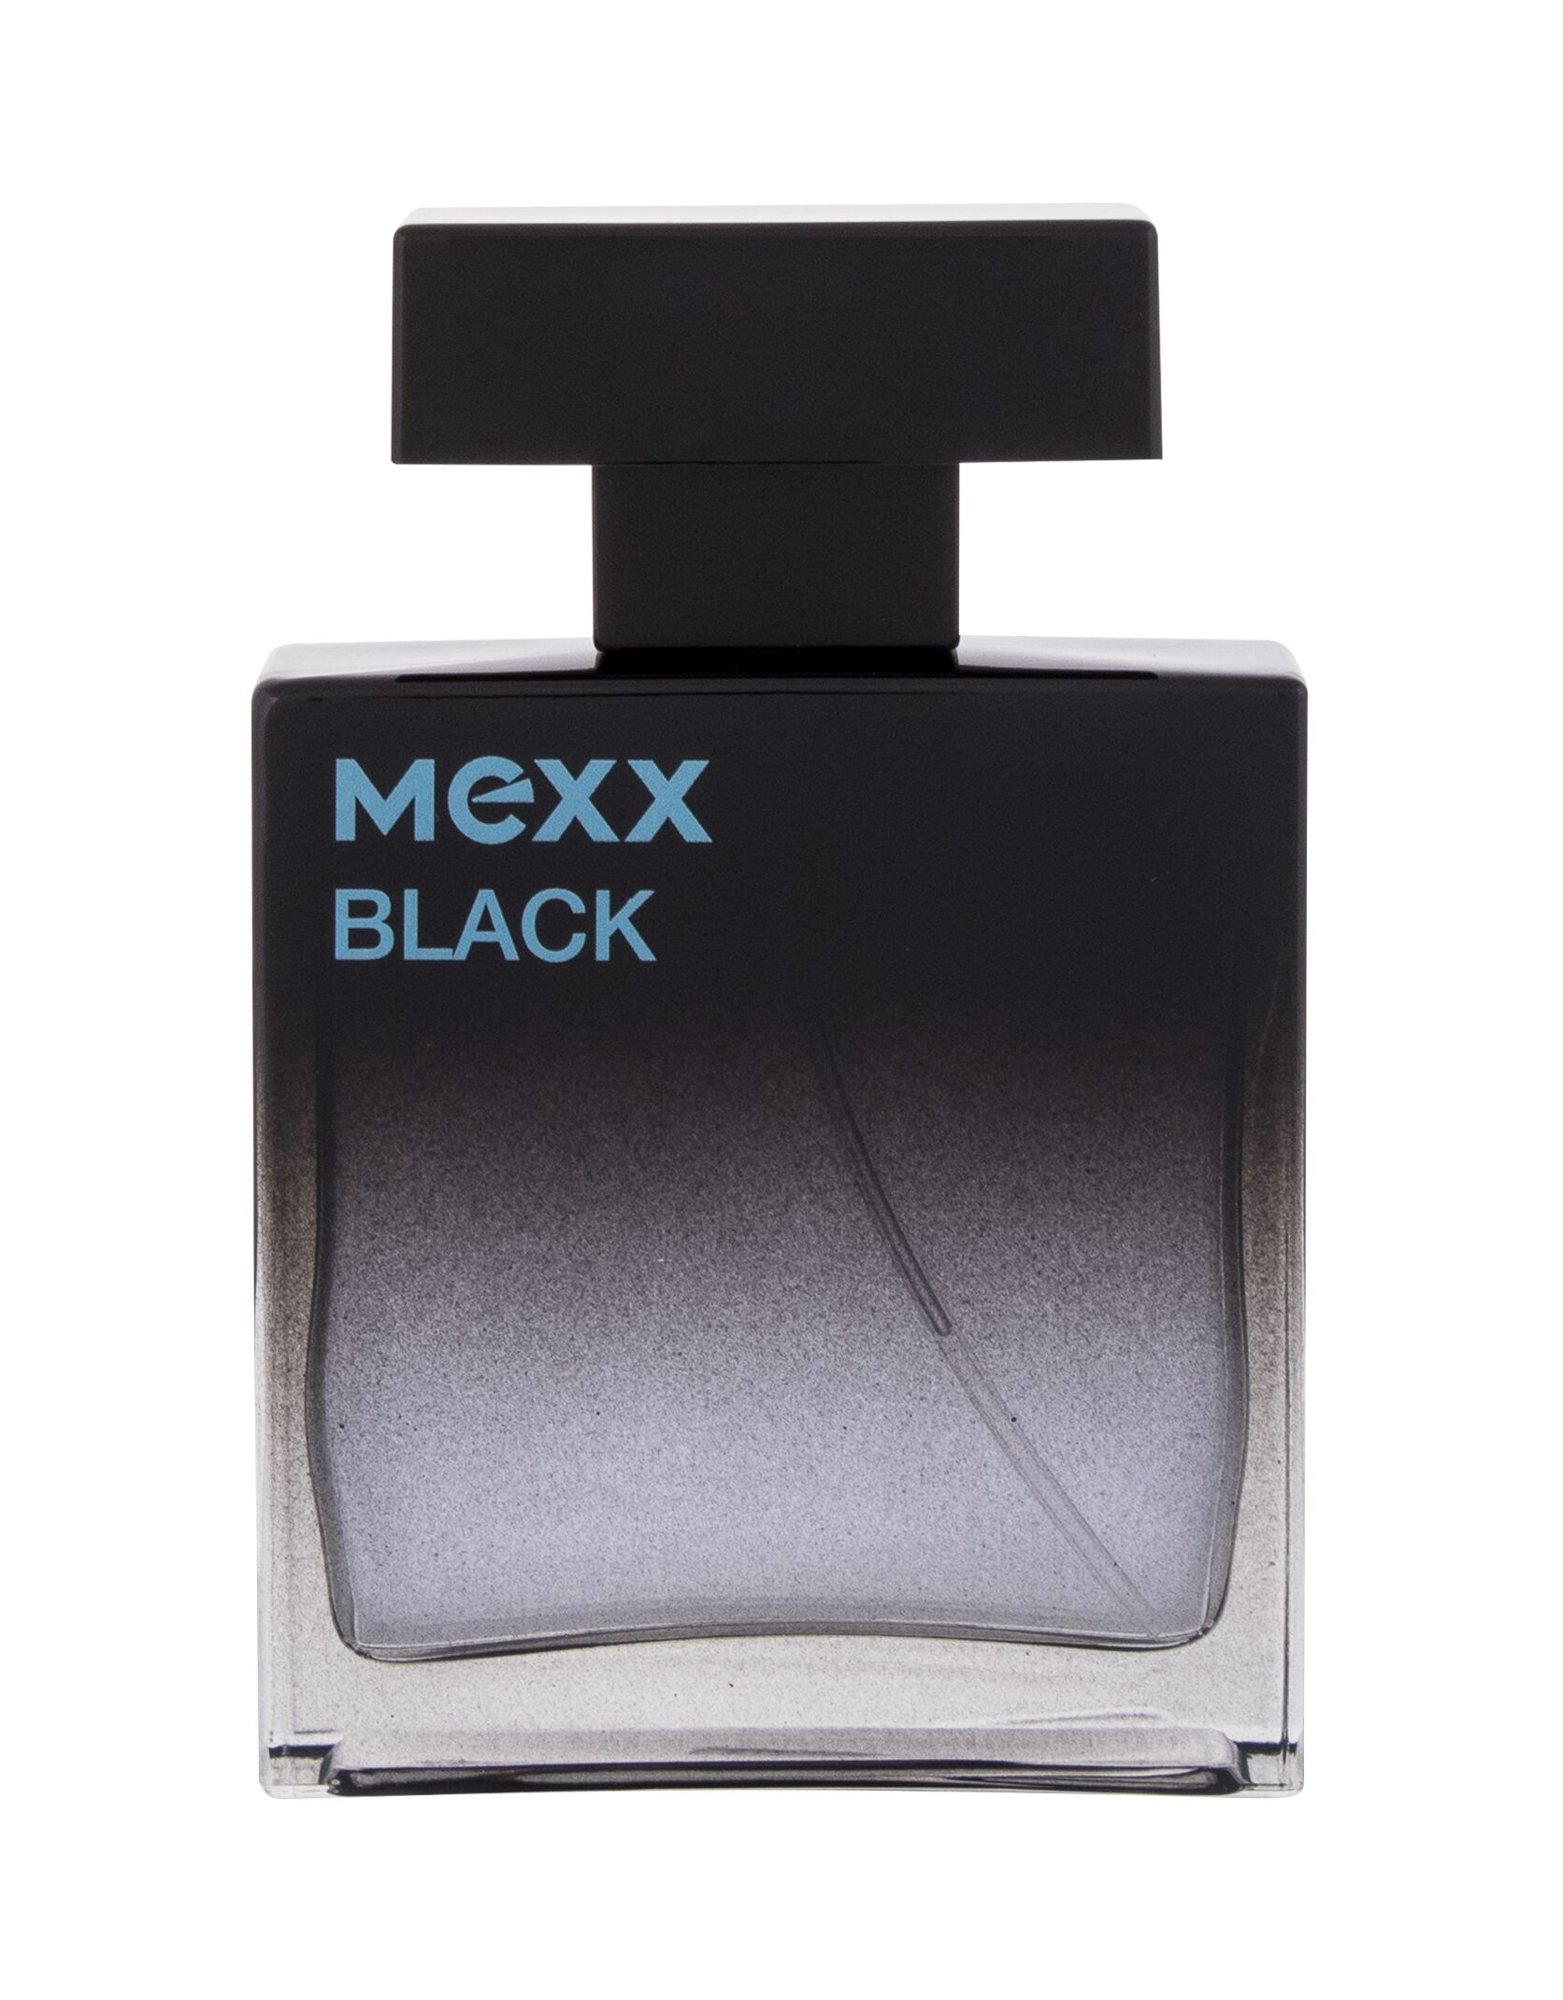 Mexx Black, Parfumovaná voda 50ml